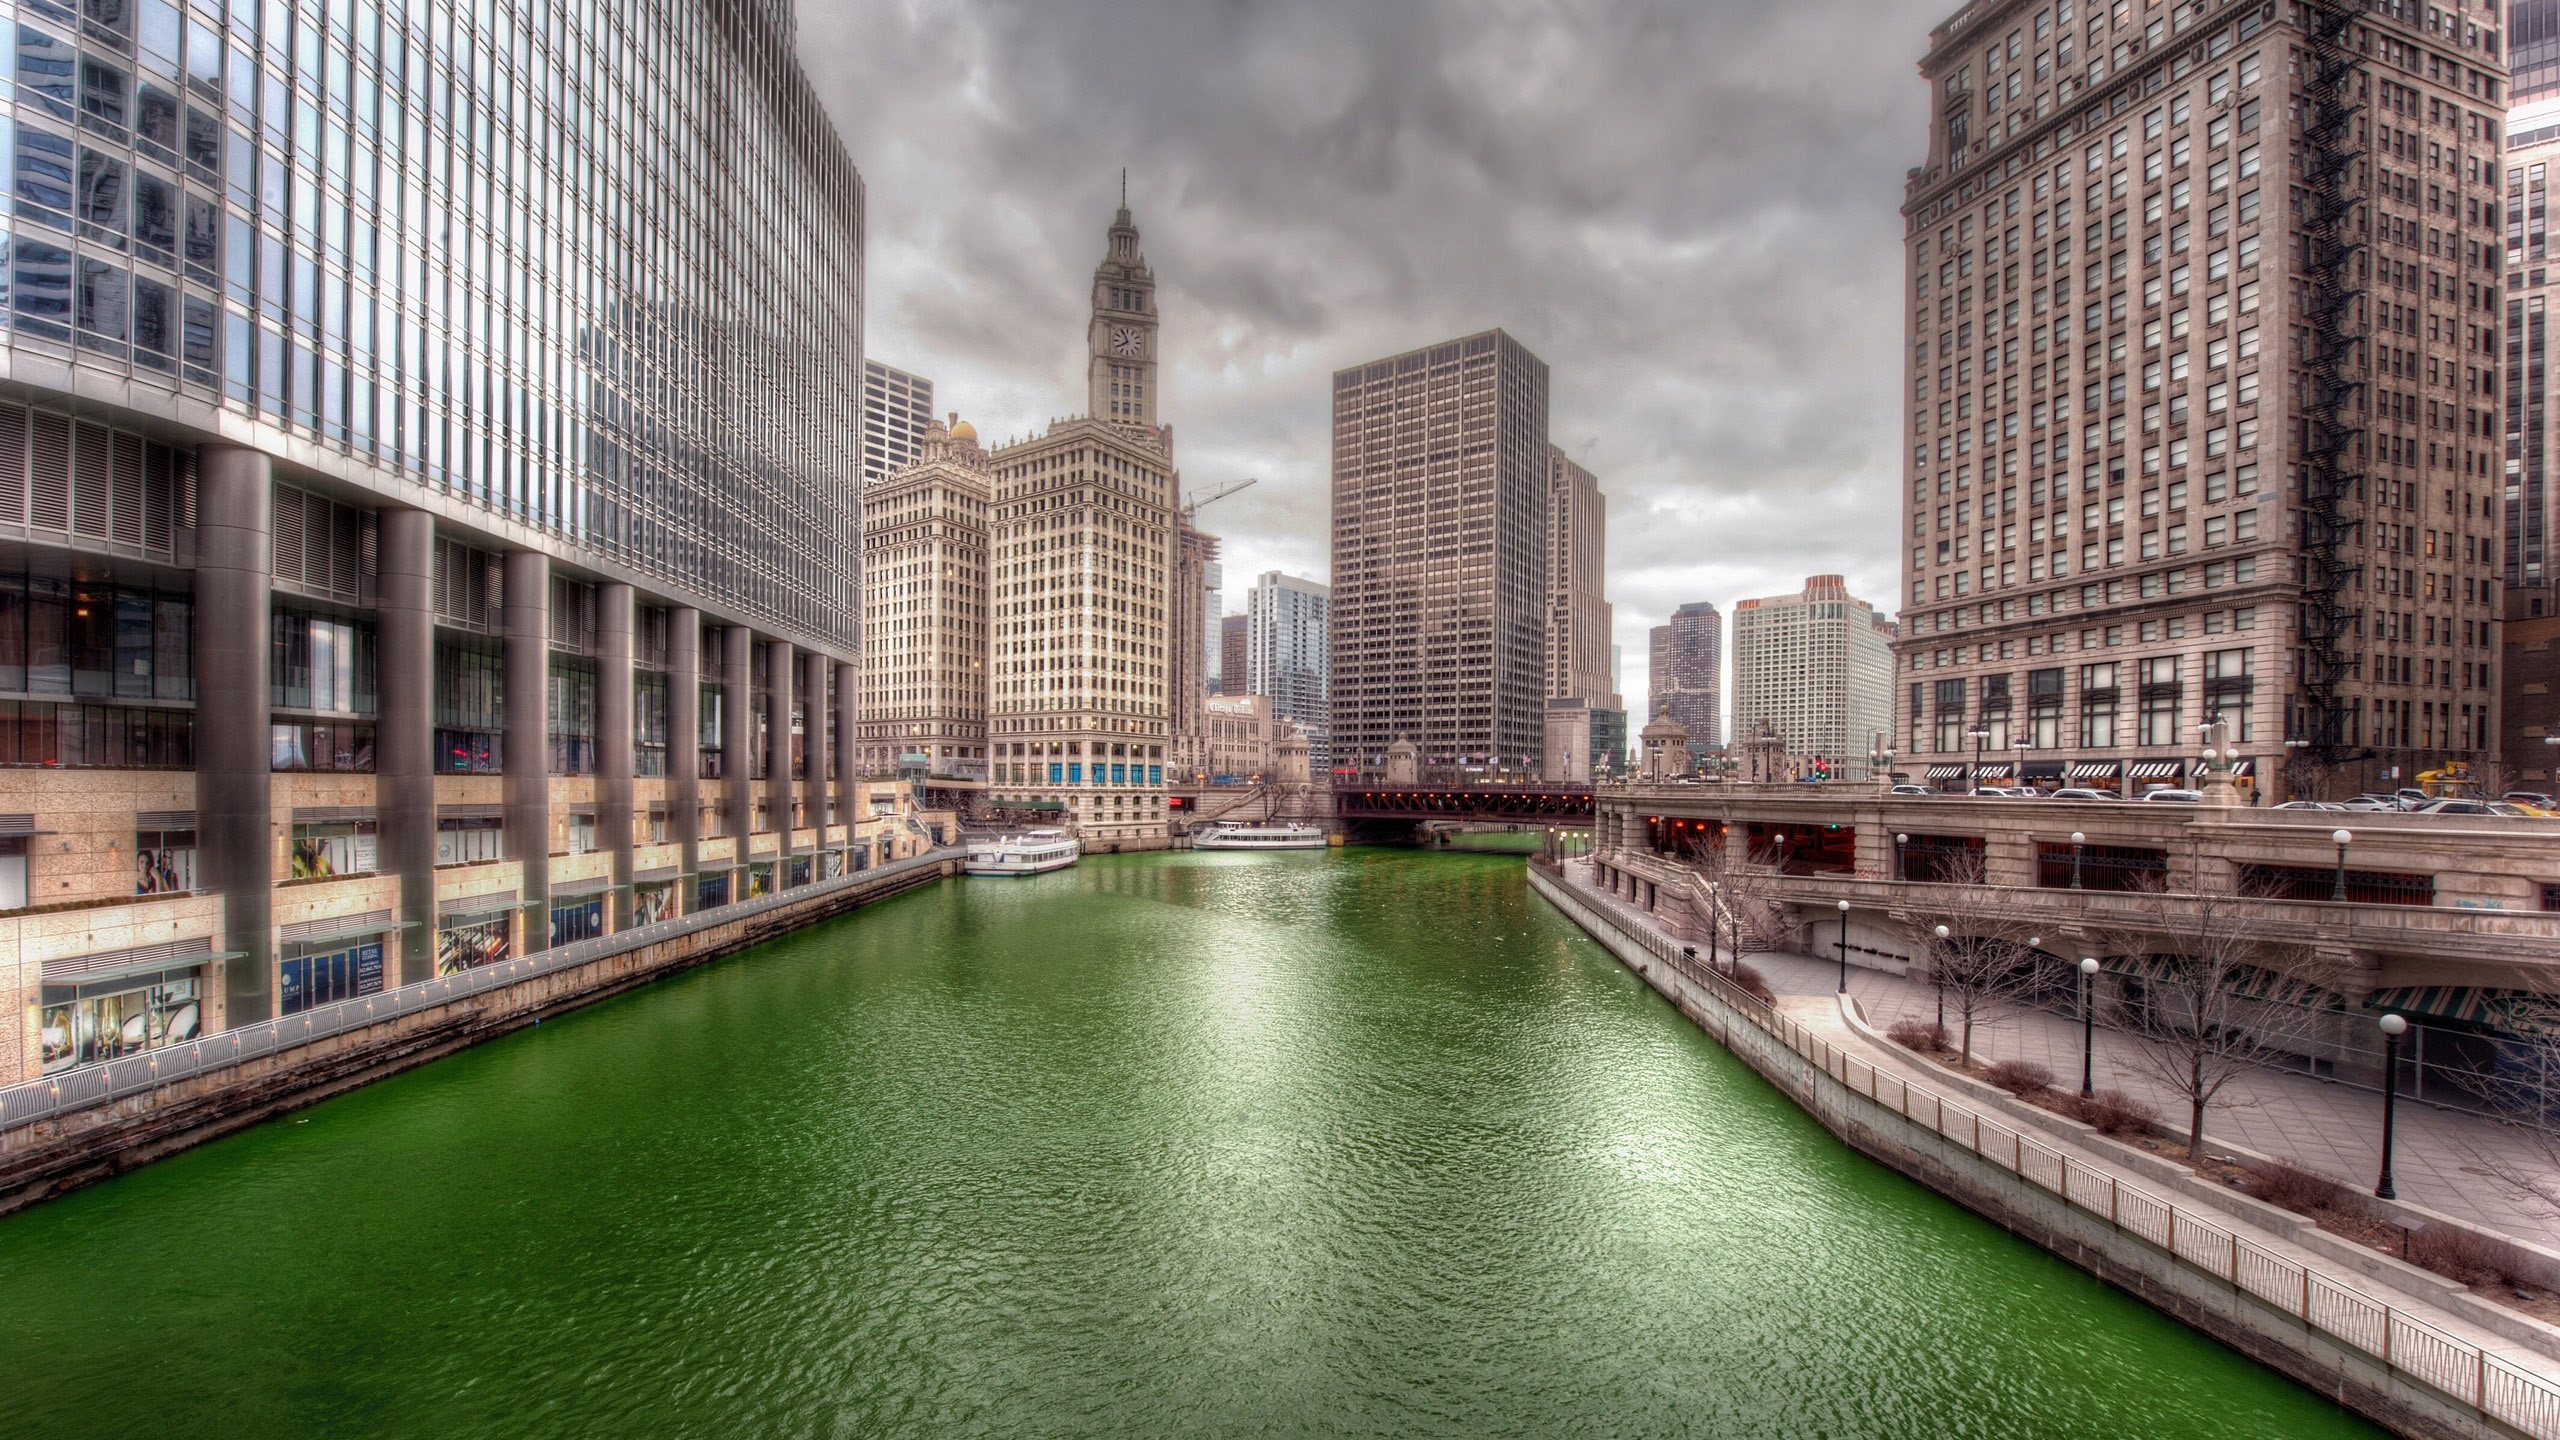 芝加哥, 城市, 城市景观, 大都会, 资本市 壁纸 2560x1440 允许